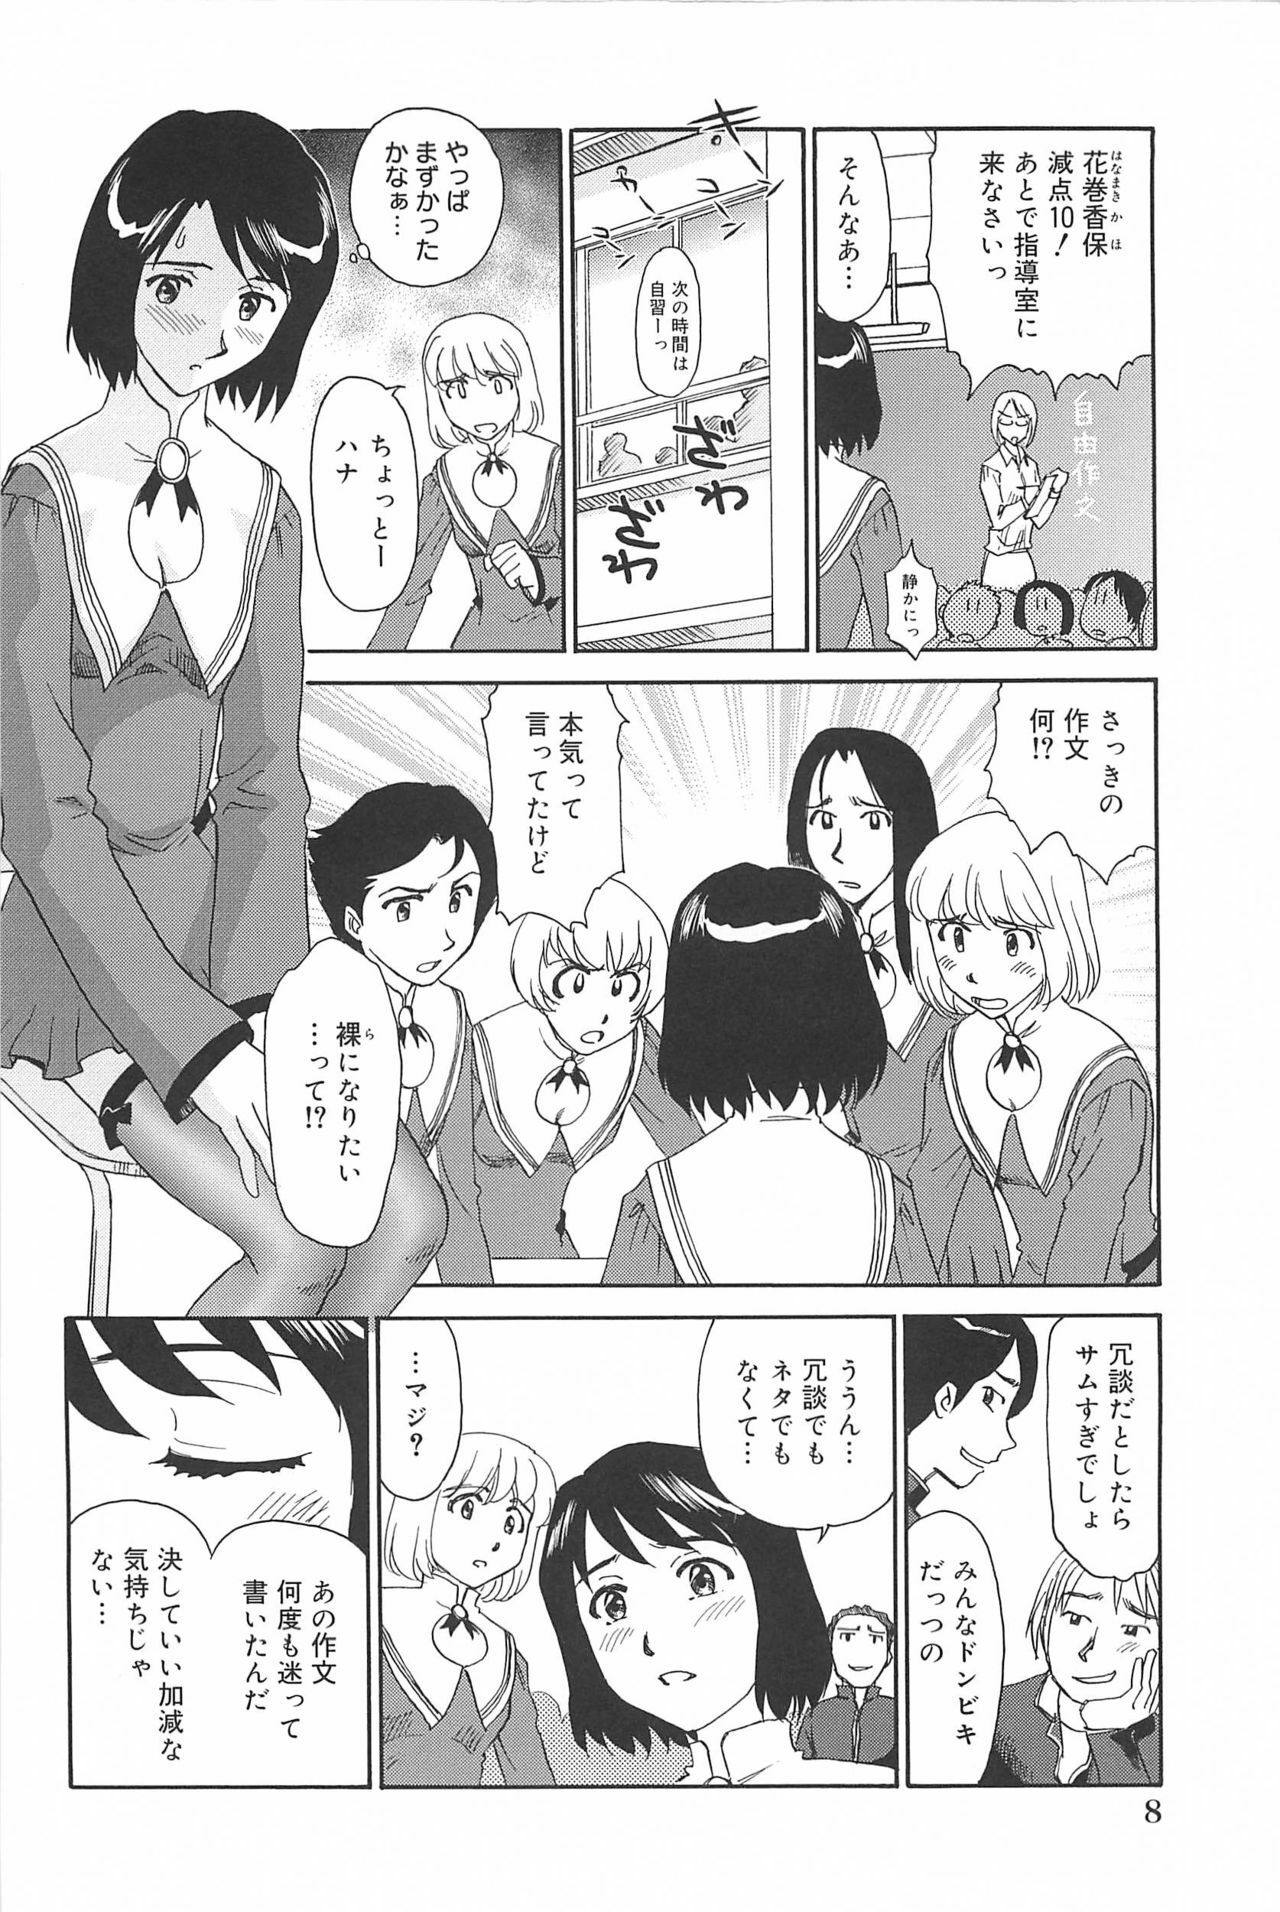 [Suehirogari] Kumo no Michi page 9 full